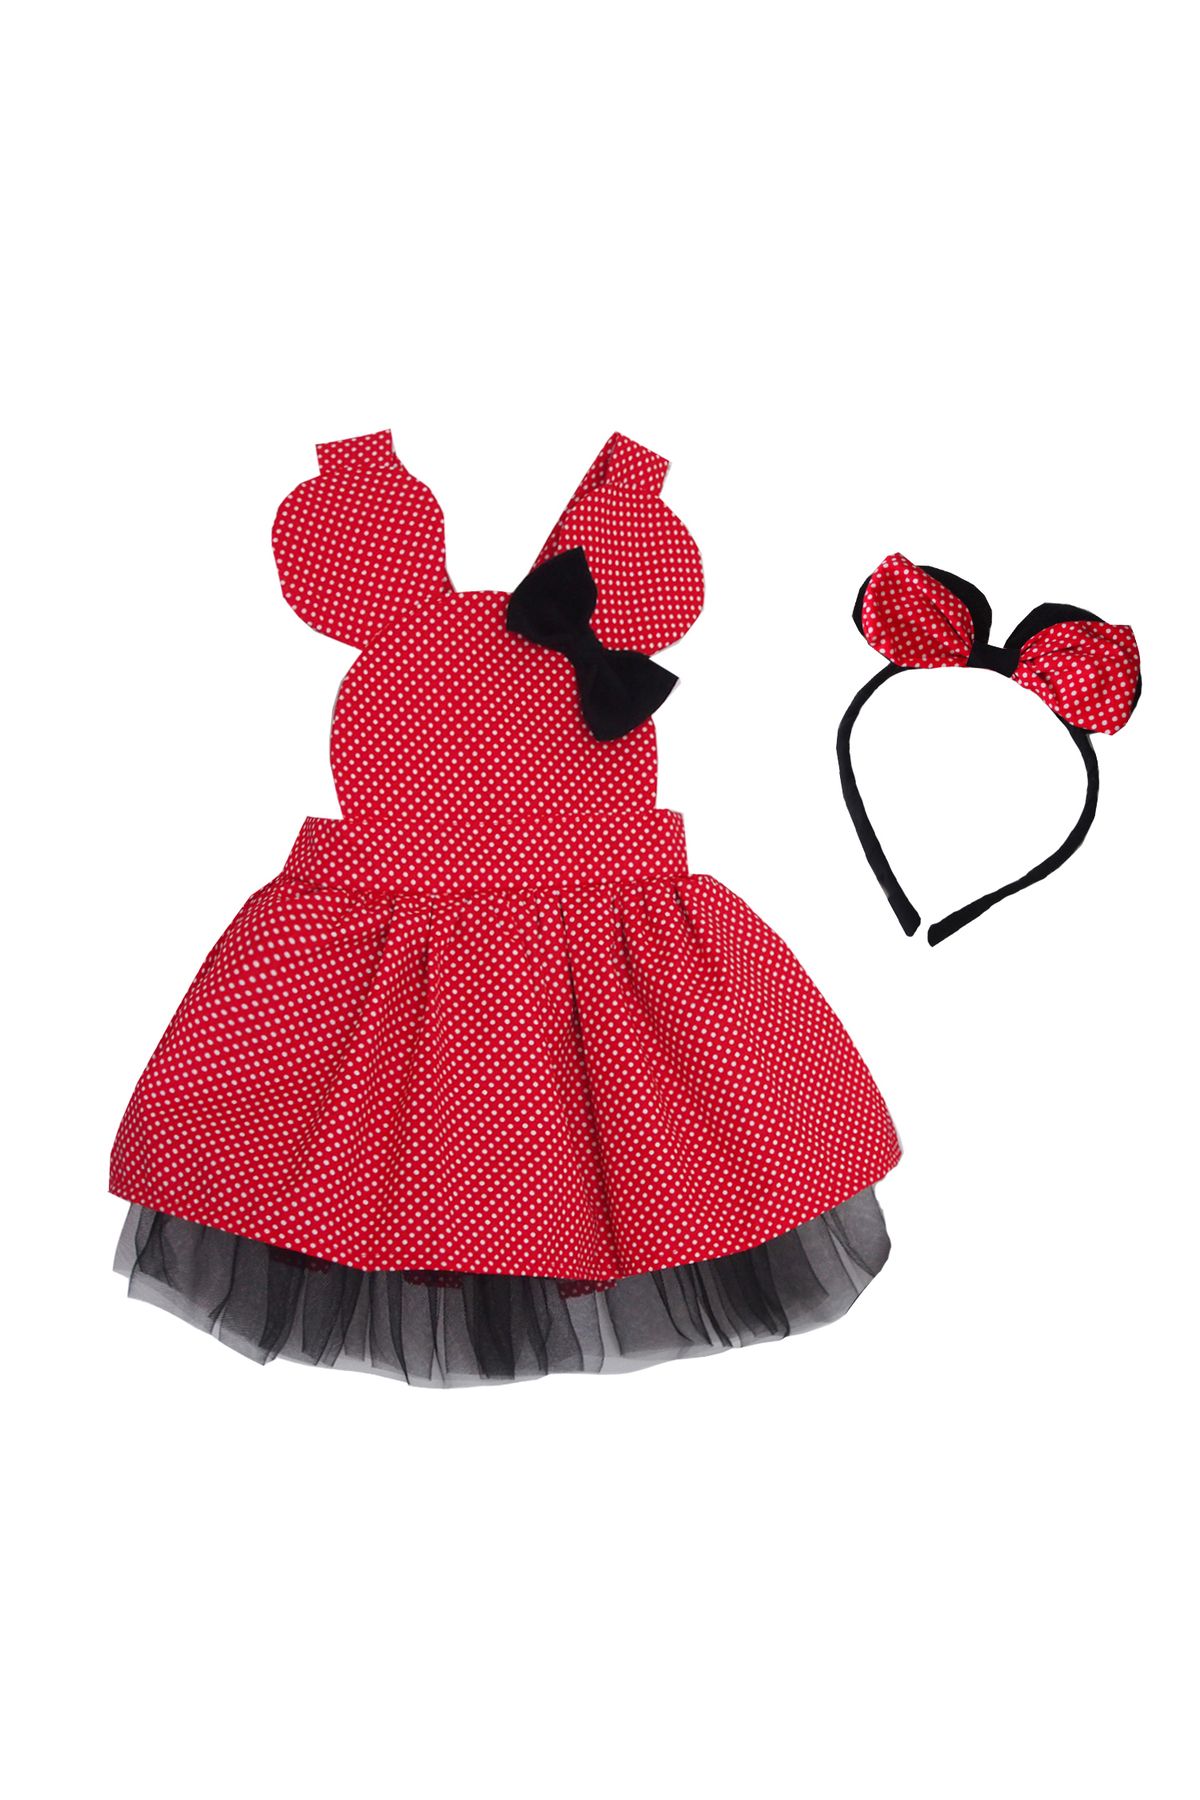 Shecco Babba Kız Çocuk Kırmızı Tütü Elbise Ve Taç, Doğum Günü Elbisesi, Kız Çocuk Elbise Modelleri 1-4 Yaş